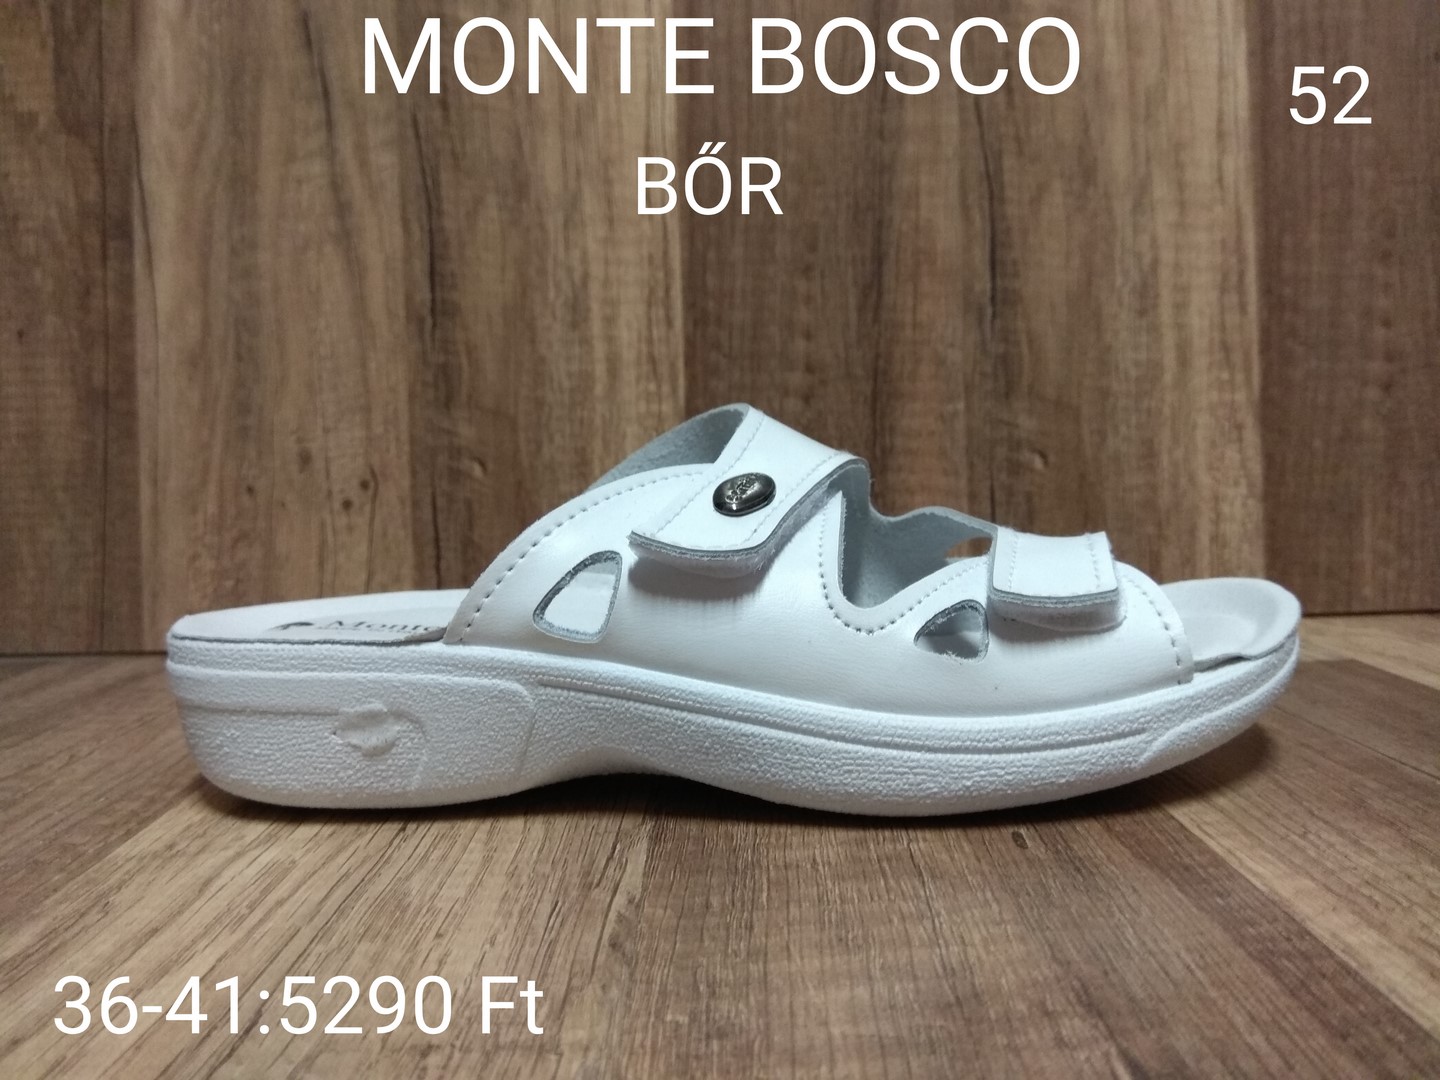 Monte Bosco